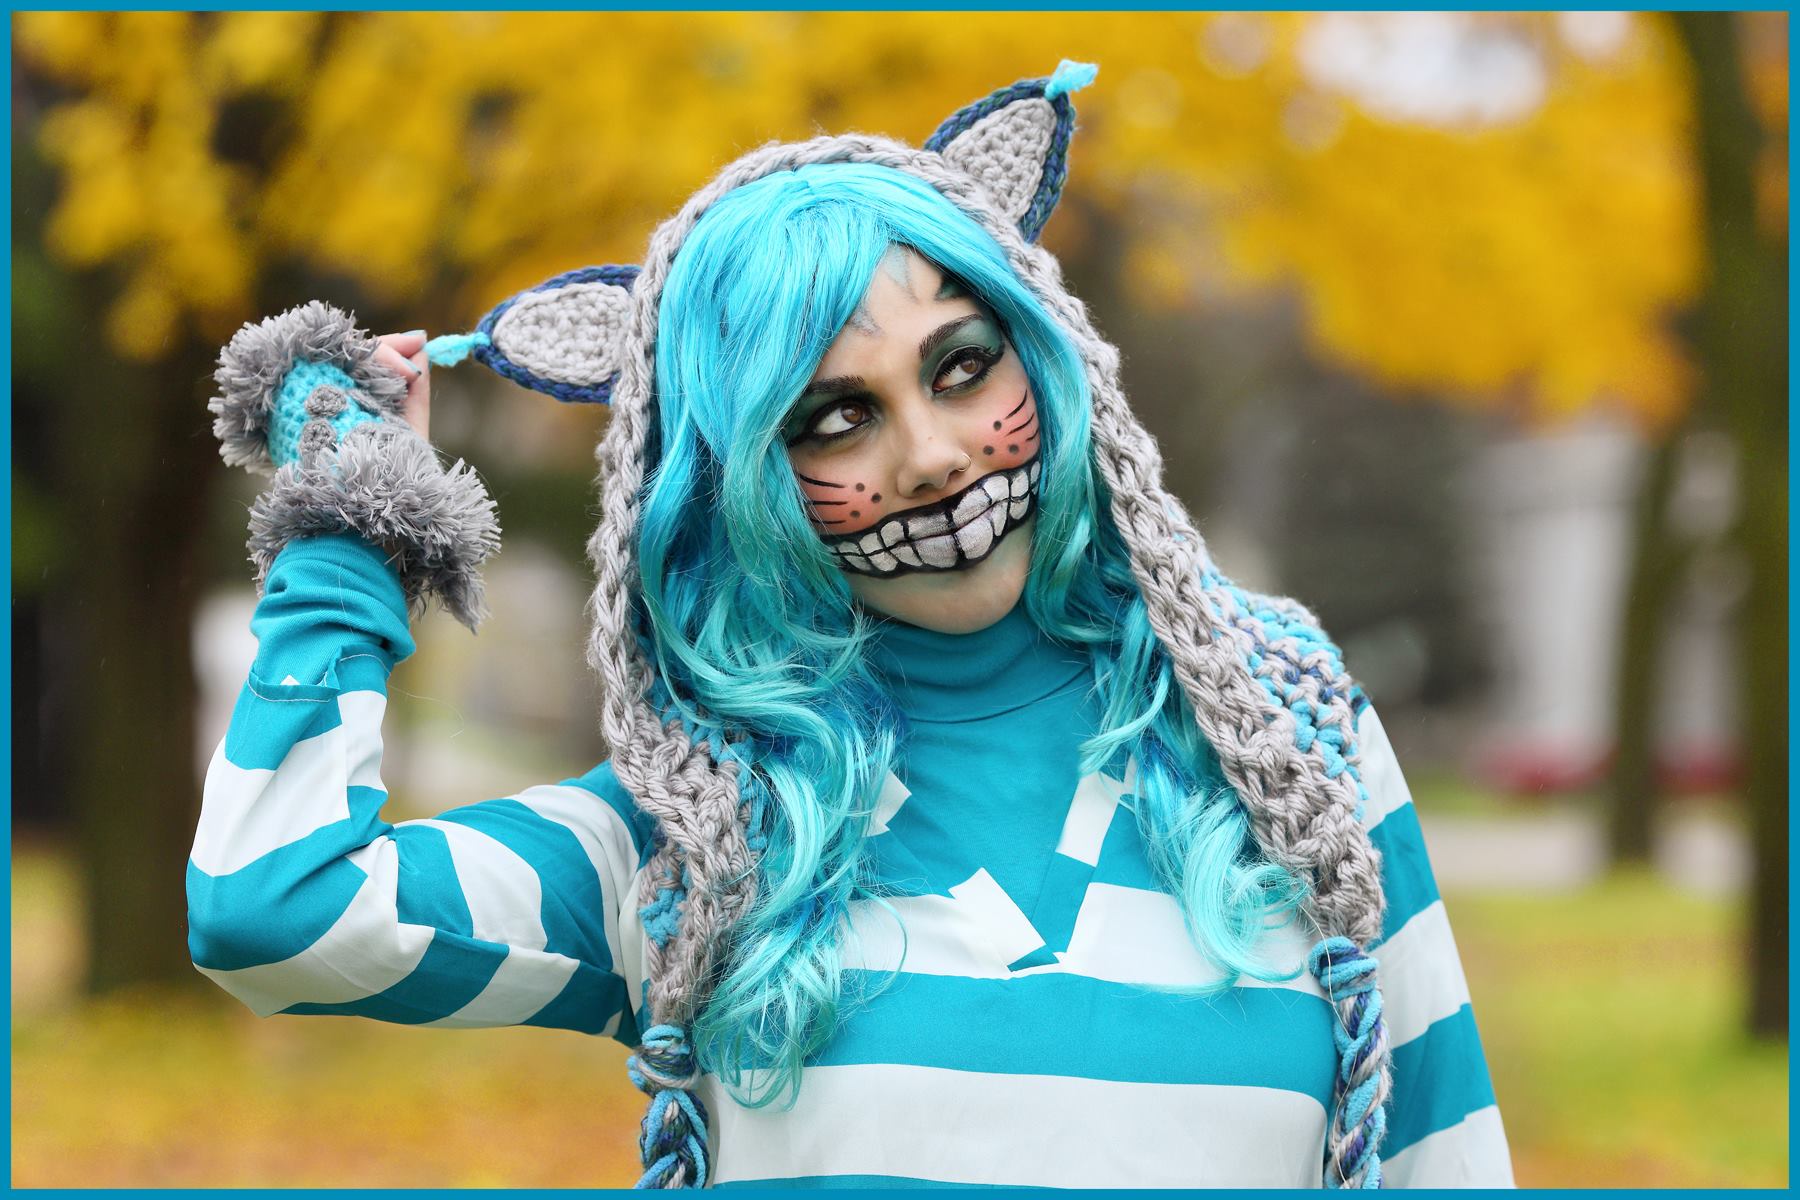 Cheshire Cat Costume Cats